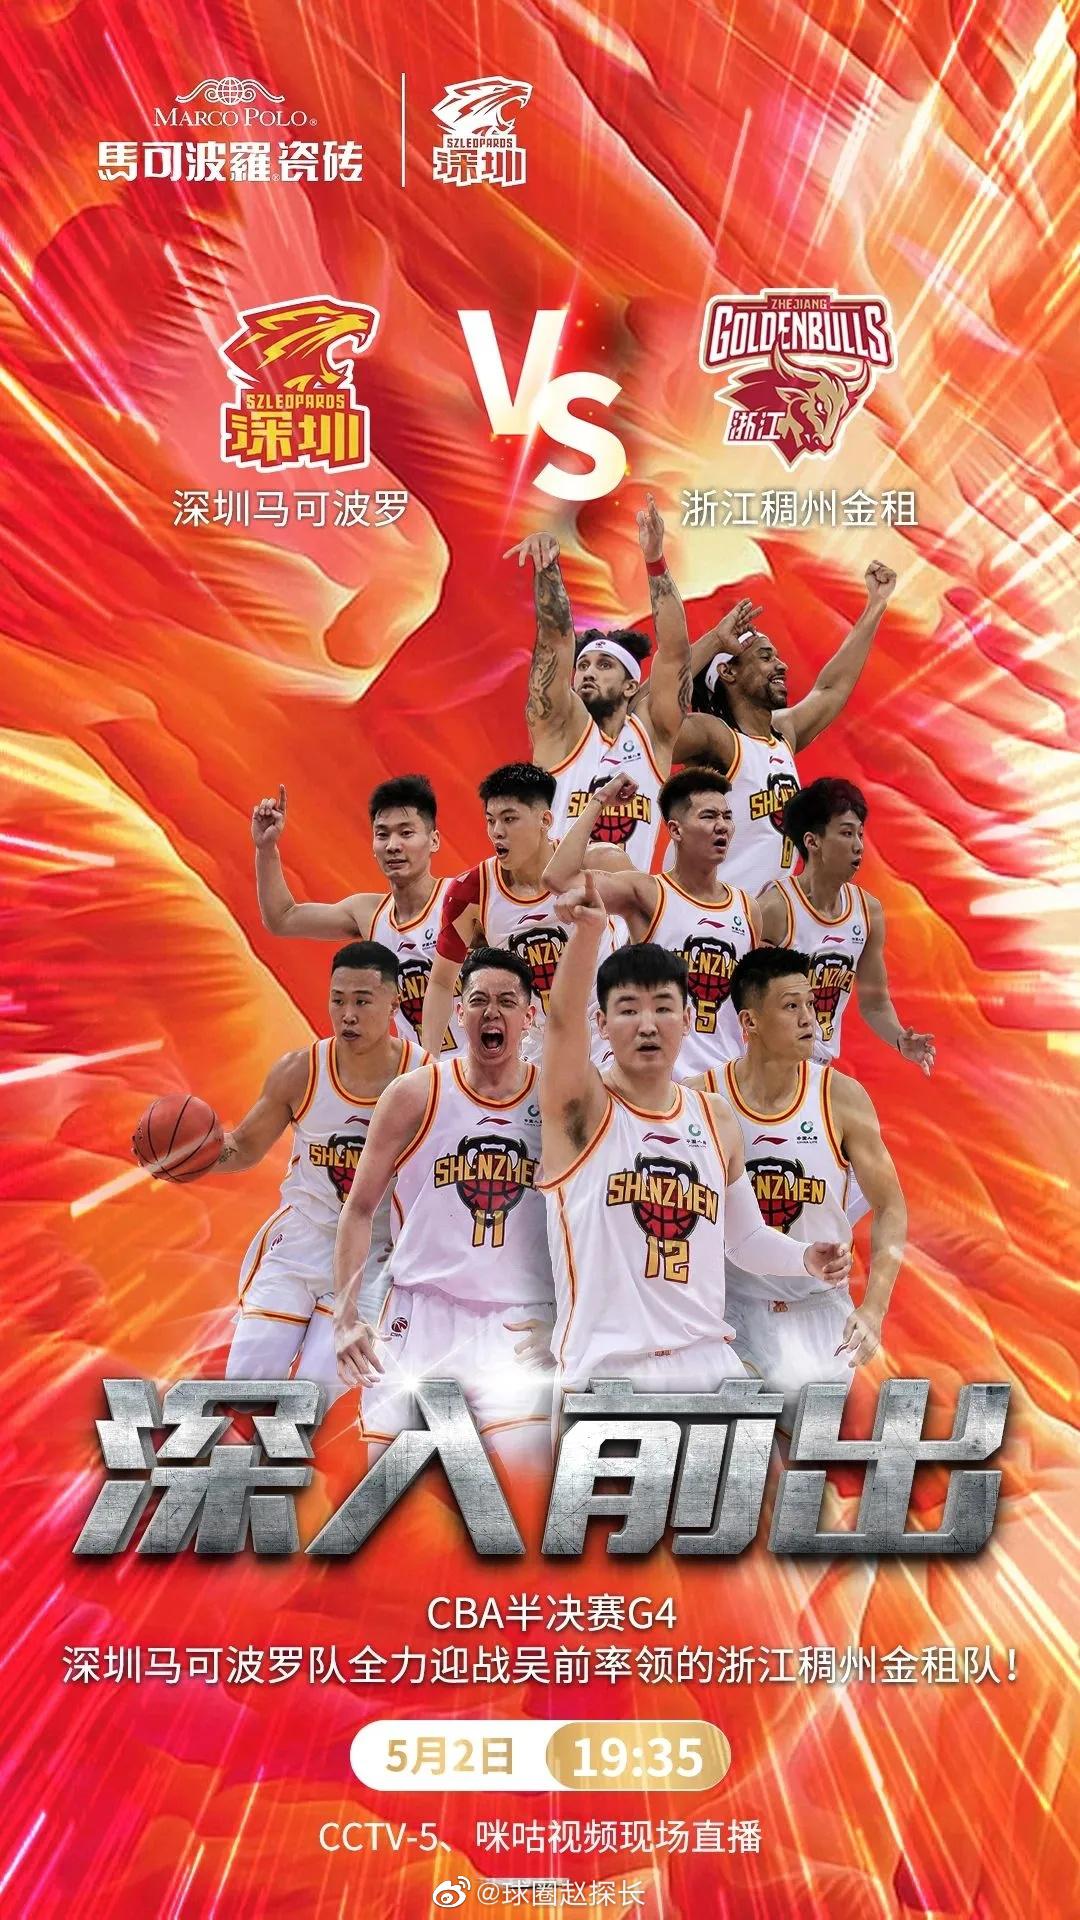 #深圳男篮vs浙江男篮# g4今晚开打，两队均发布了赛前海报，深圳男篮的主题是“